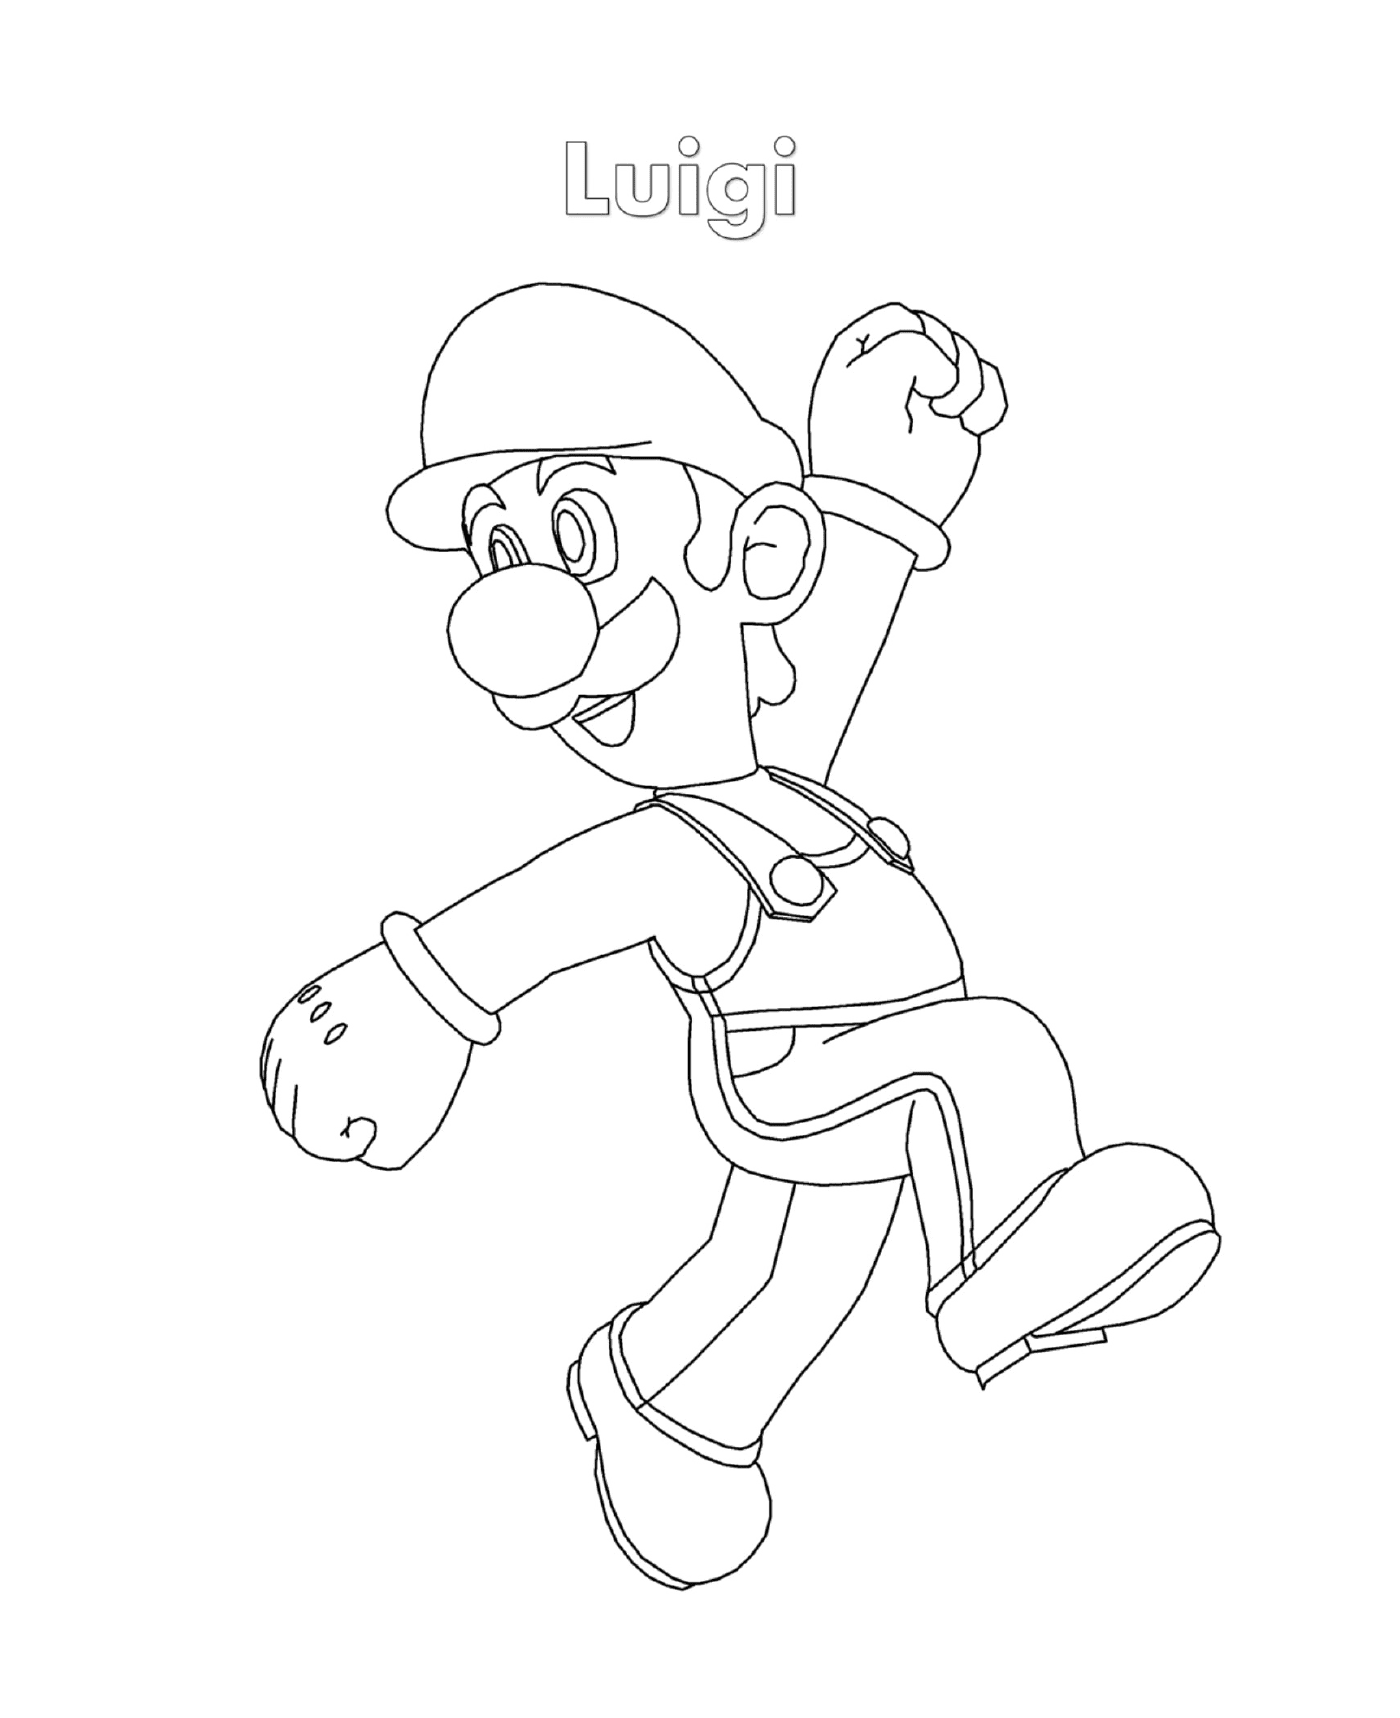  Luigi von Super Mario, ein Mann, der läuft 